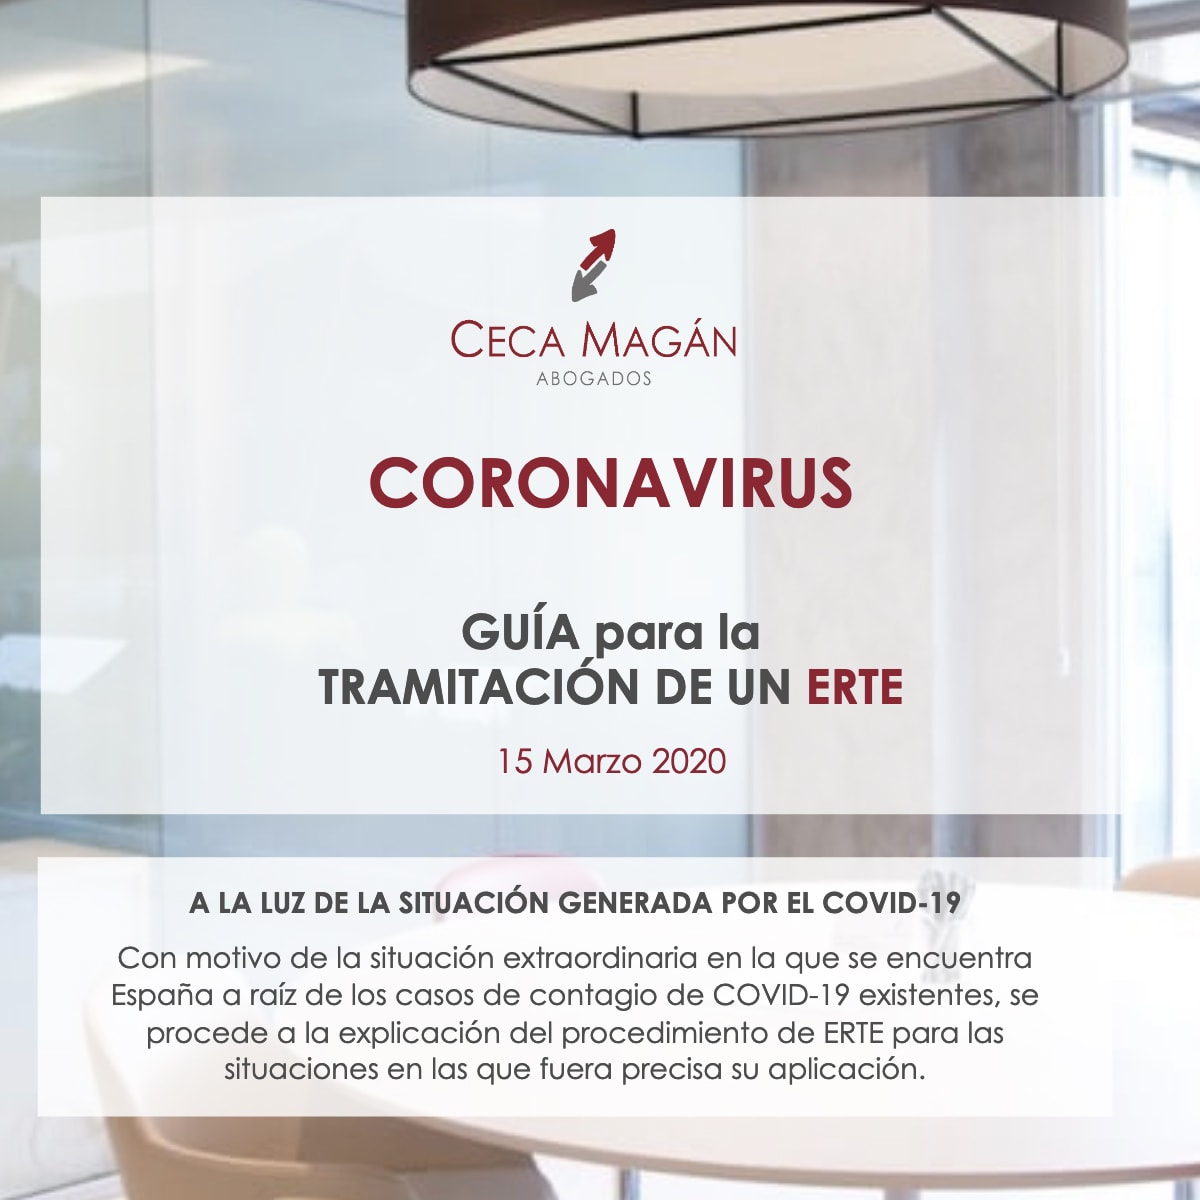 Coronavirus: Guía para la tramitación de un ERTE